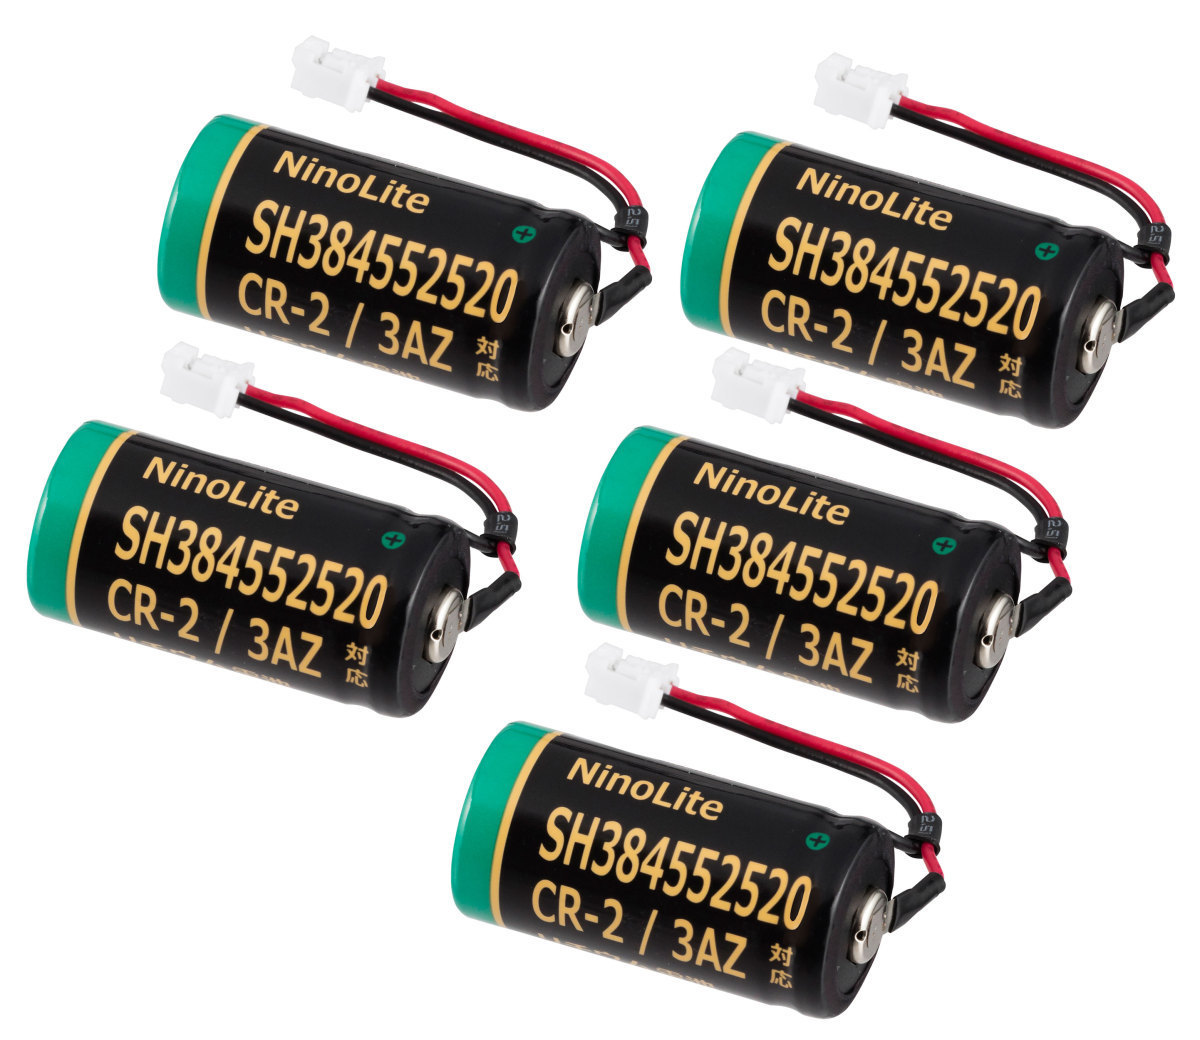 5 шт. комплект SH384552520 CR-2/3AZ CR-2/3AZC23P соответствует сменный lithium батарейка 1600mAh большая вместимость SHK7620 и т.п. жилье для огонь сигнал тревоги контейнер аккумулятор 